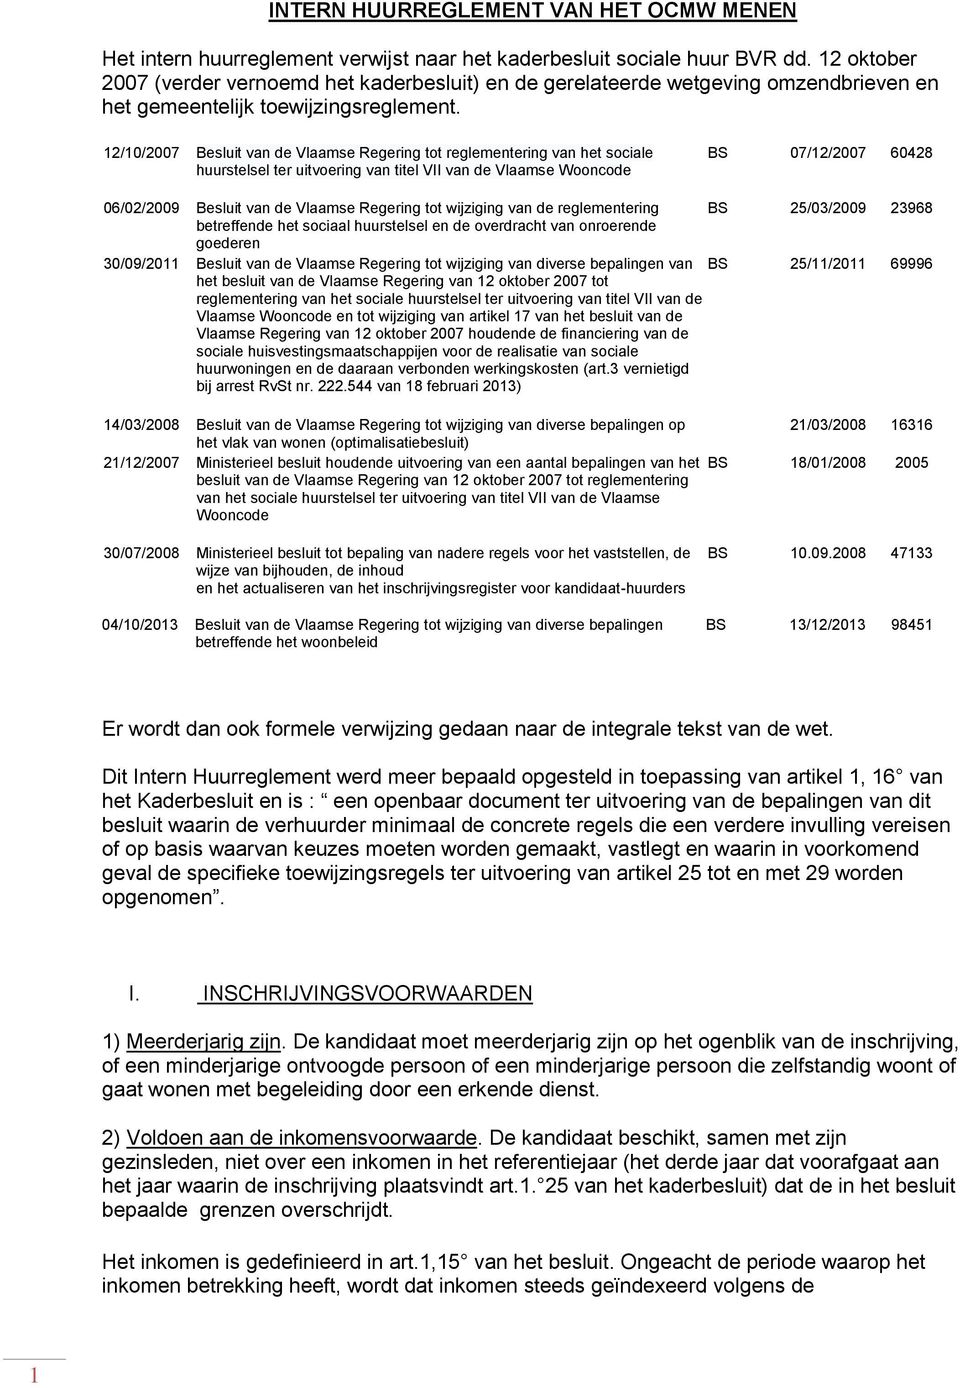 12/10/2007 Besluit van de Vlaamse Regering tot reglementering van het sociale huurstelsel ter uitvoering van titel VII van de Vlaamse Wooncode BS 07/12/2007 60428 06/02/2009 Besluit van de Vlaamse